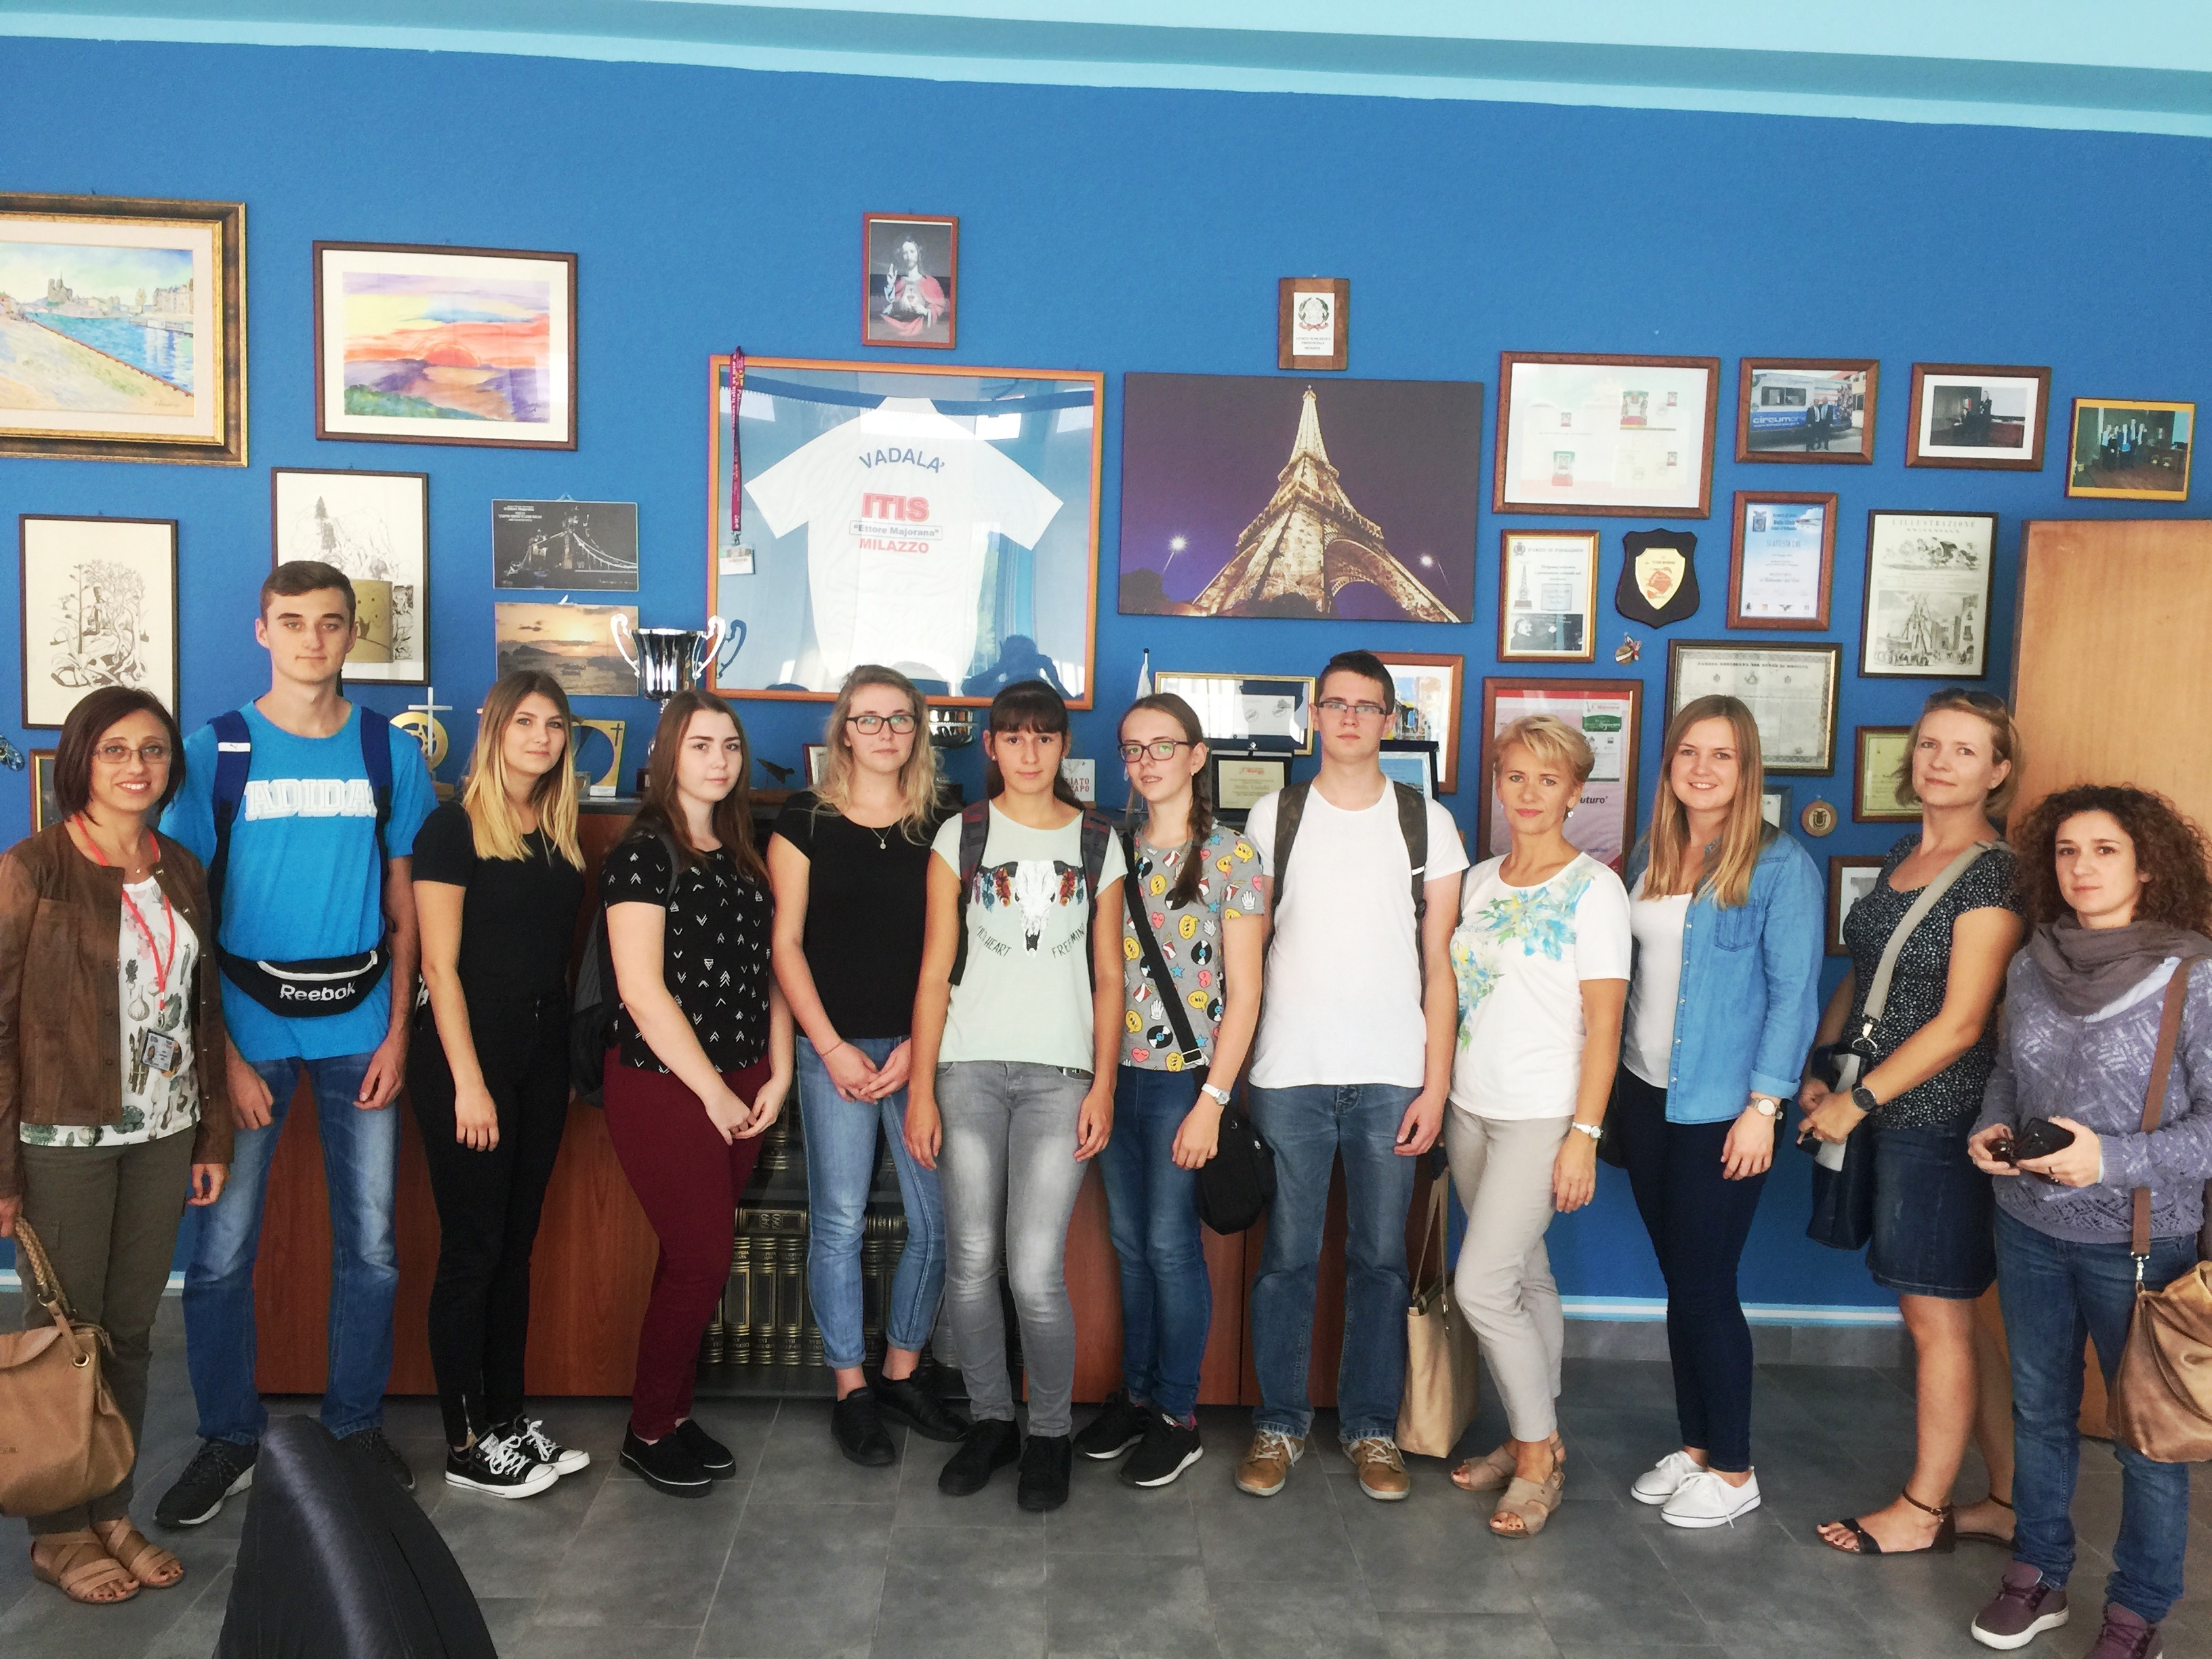 Mobilità giovanile, 7 studenti polacchi ospiti all'istituto "Ettore Majorana"